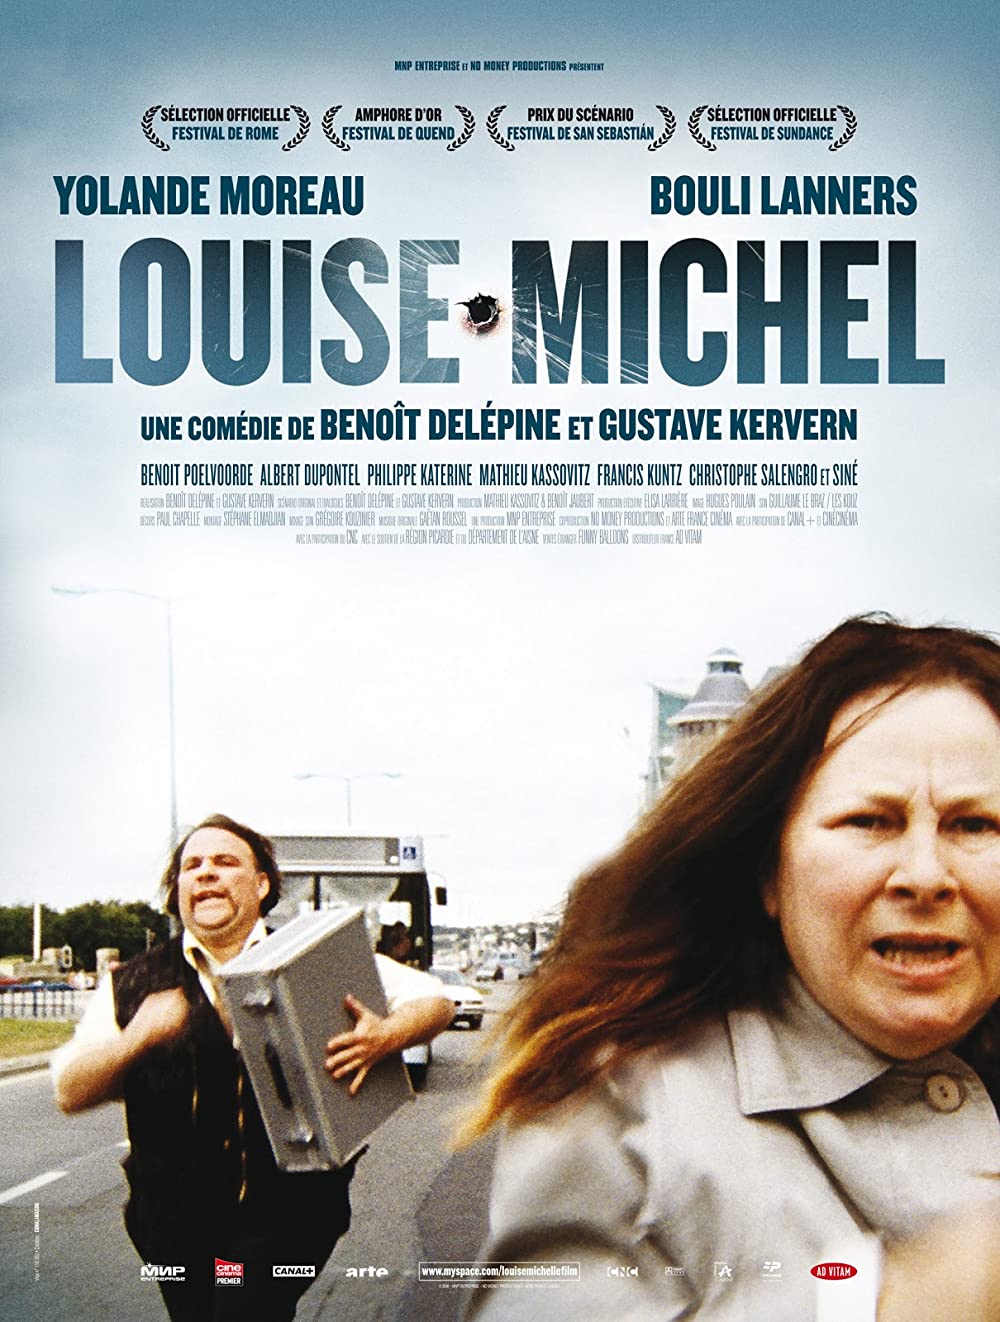 Filmbeschreibung zu Louise Hires a Contract Killer